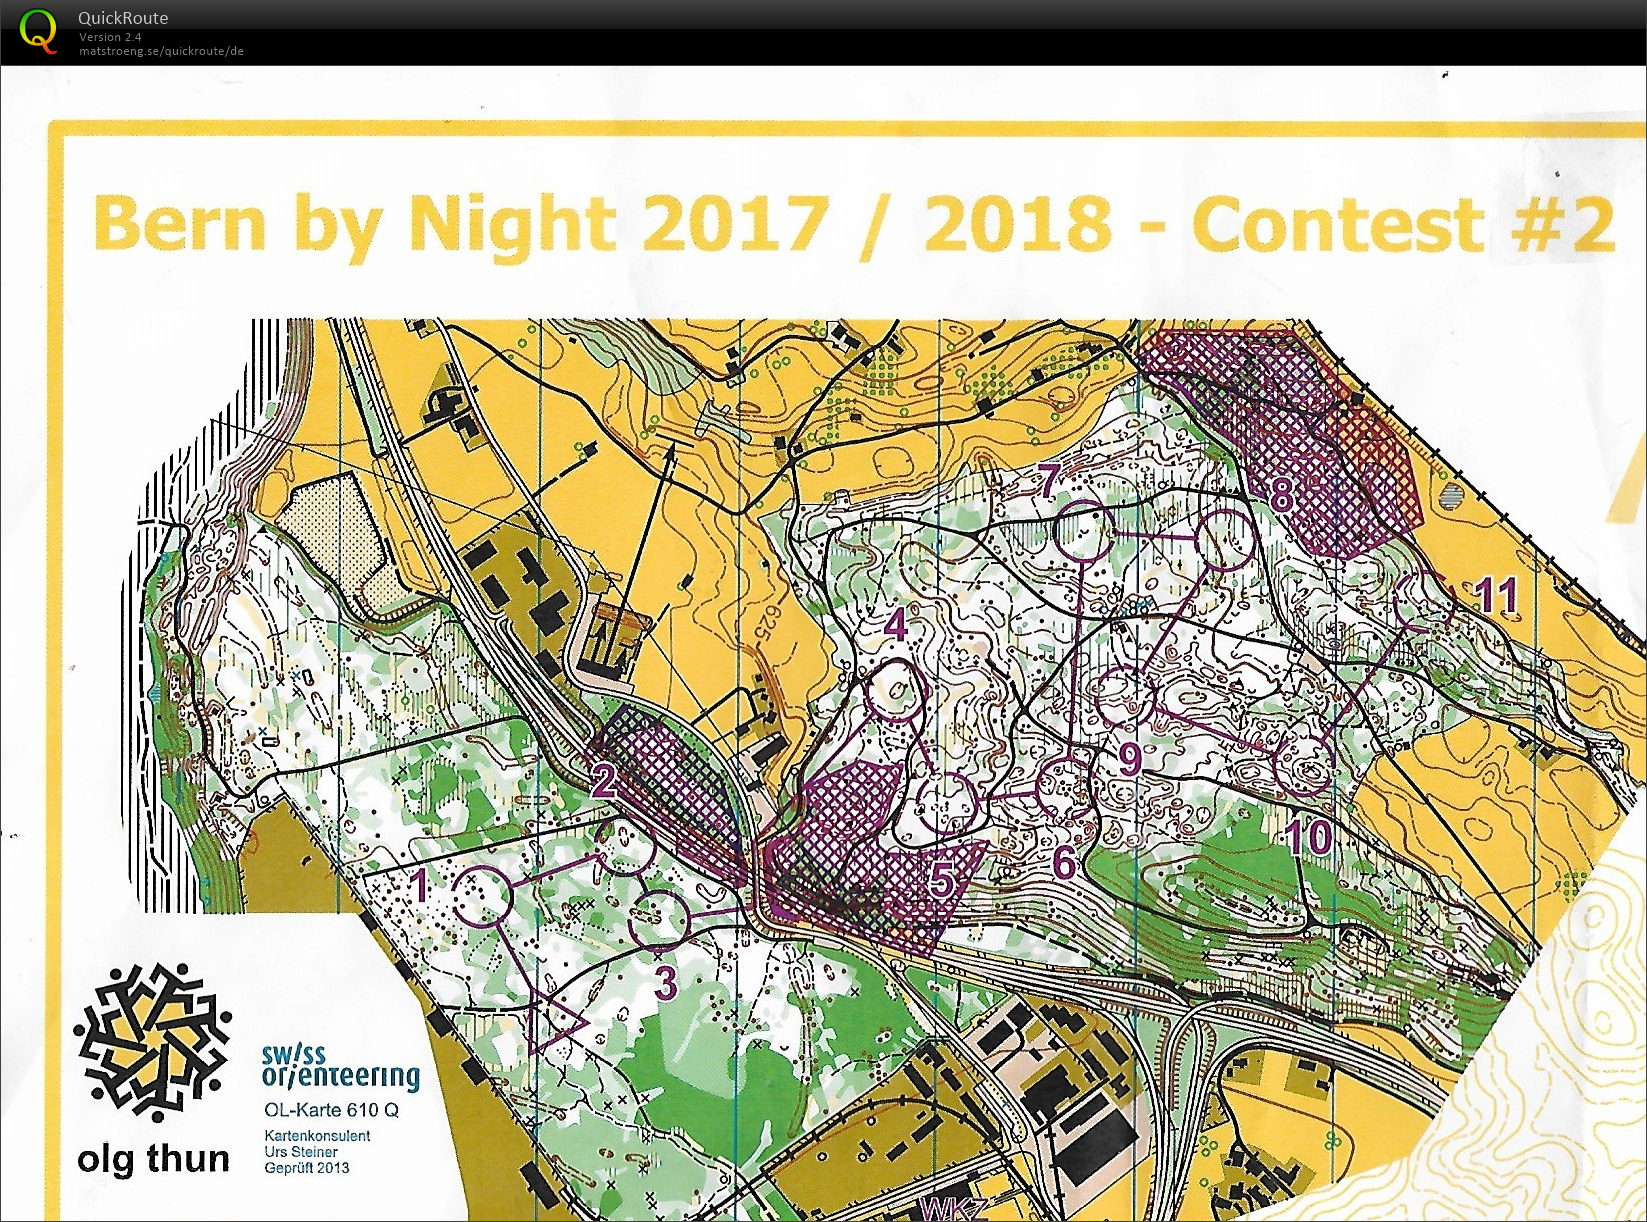 Bern by night #2 (08-12-2017)